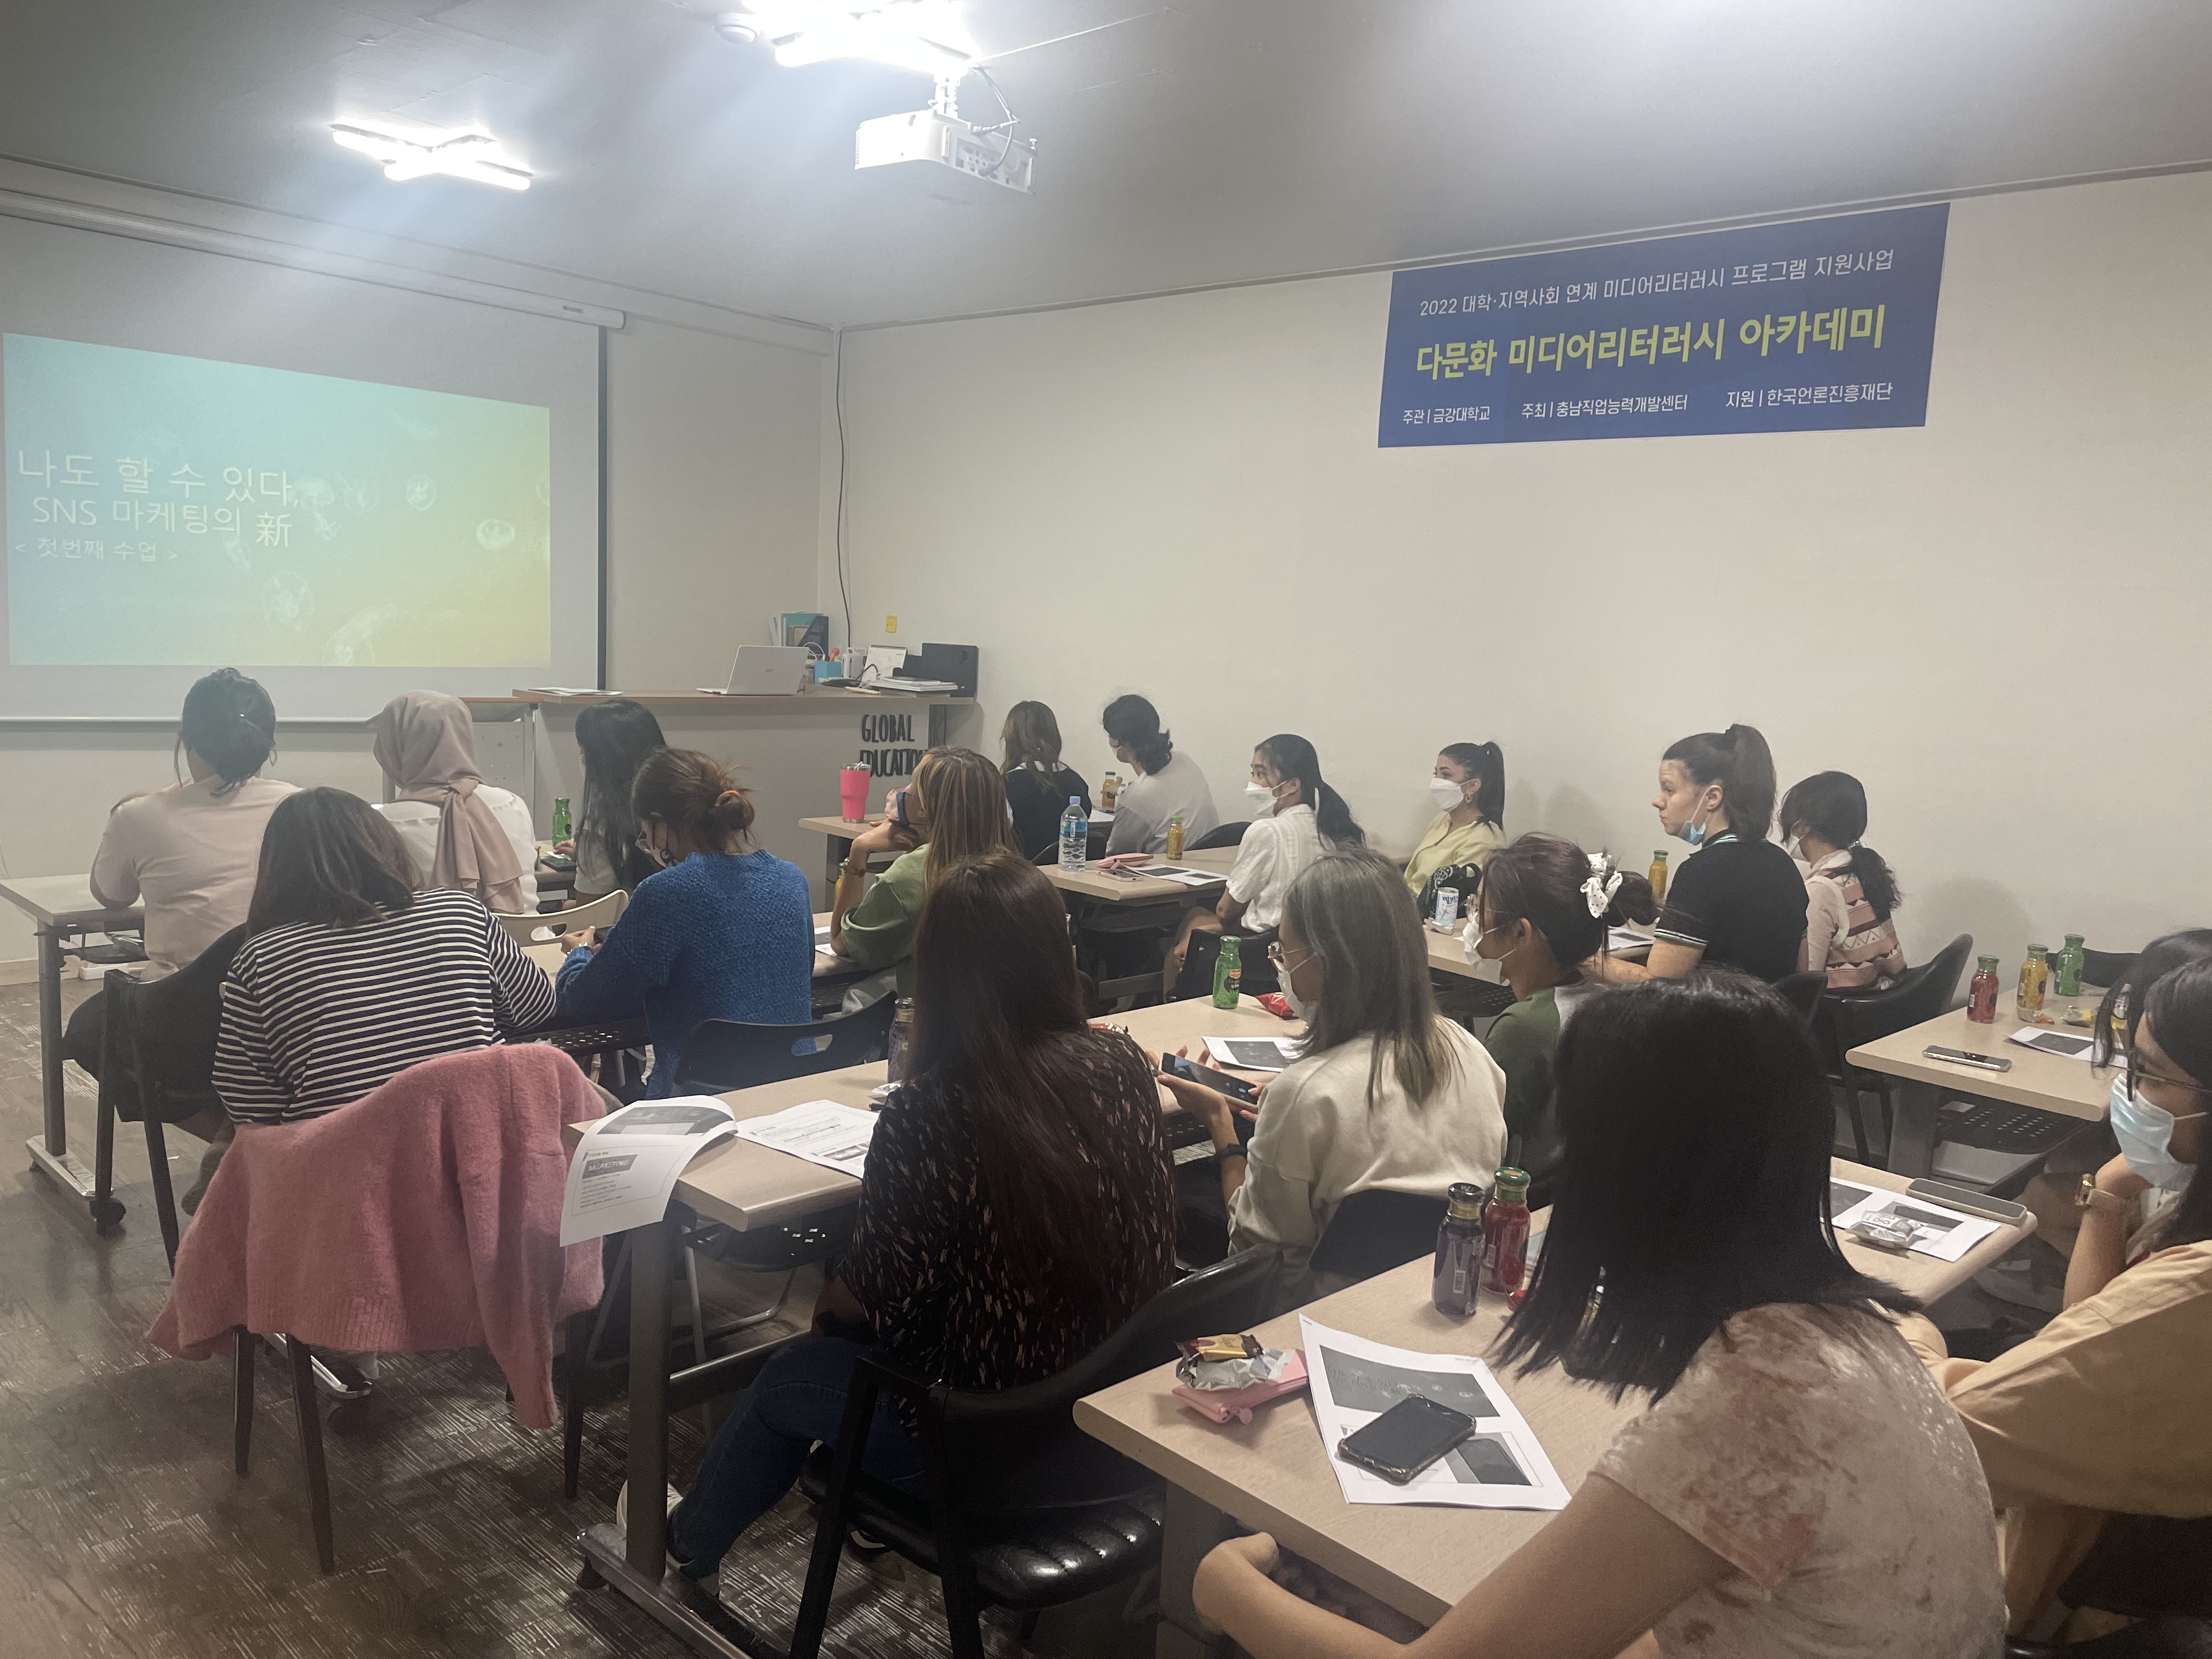 한국언론진흥재단 지원, 논산지역 다문화 구성원 미디어 리터러시 교육 프로그램 운영